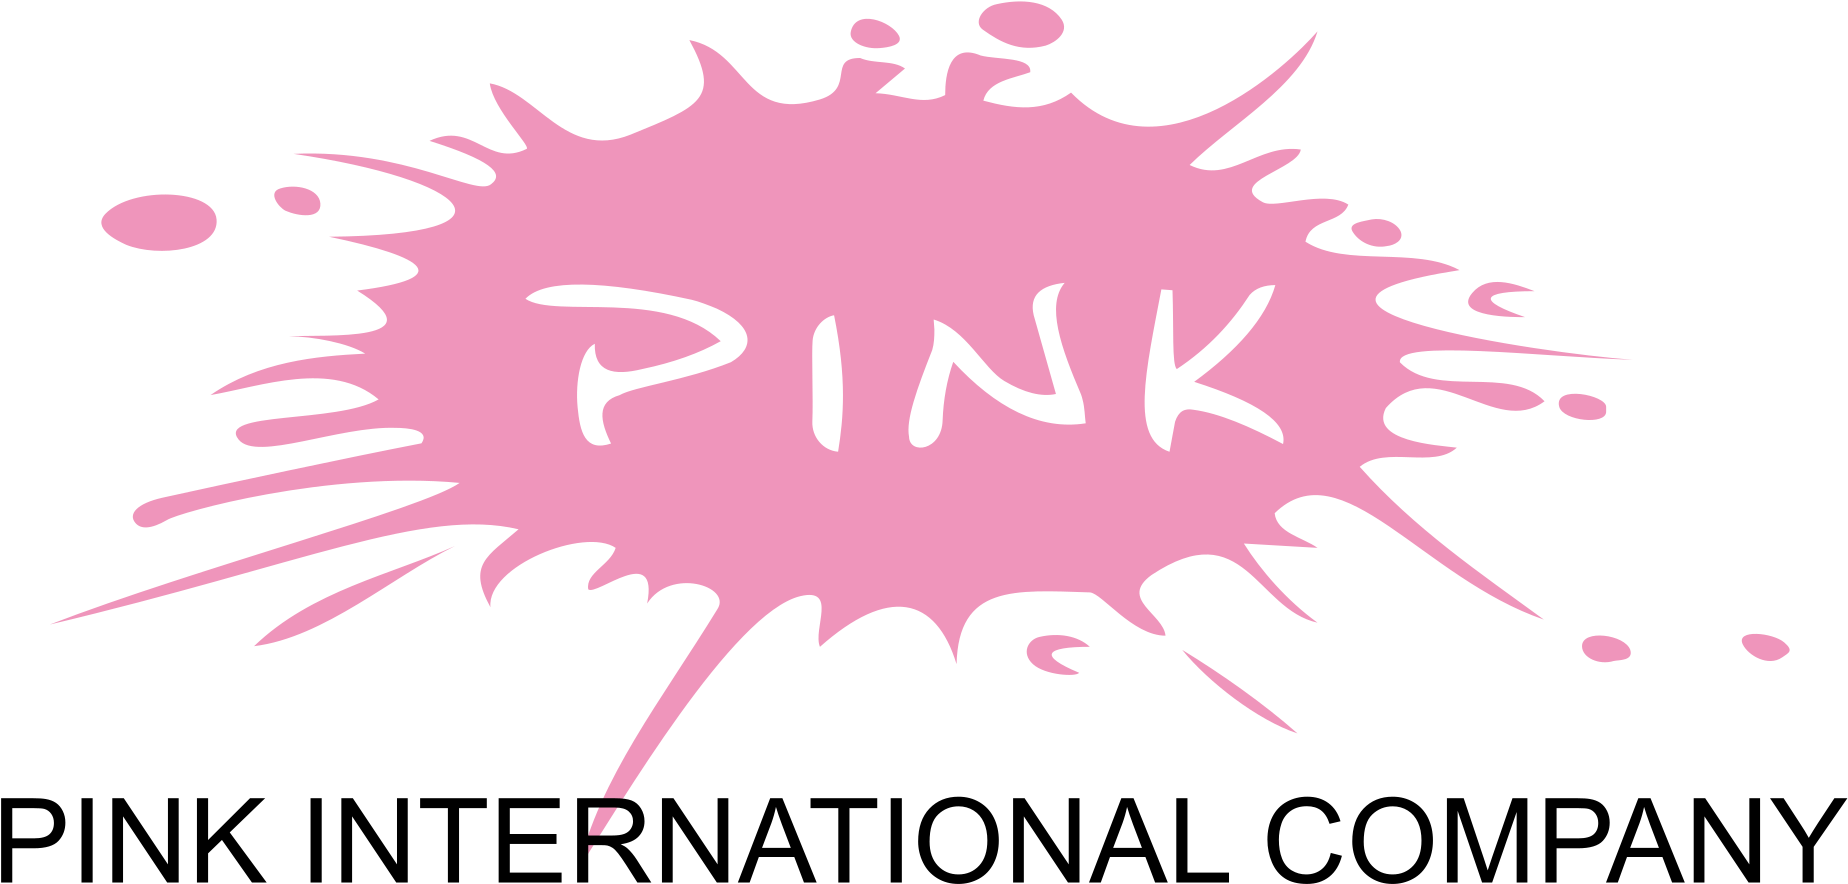 Download Download Pink Logo Best Cars Png Victoria Secret Pink Love Svg Png Image With No Background Pngkey Com